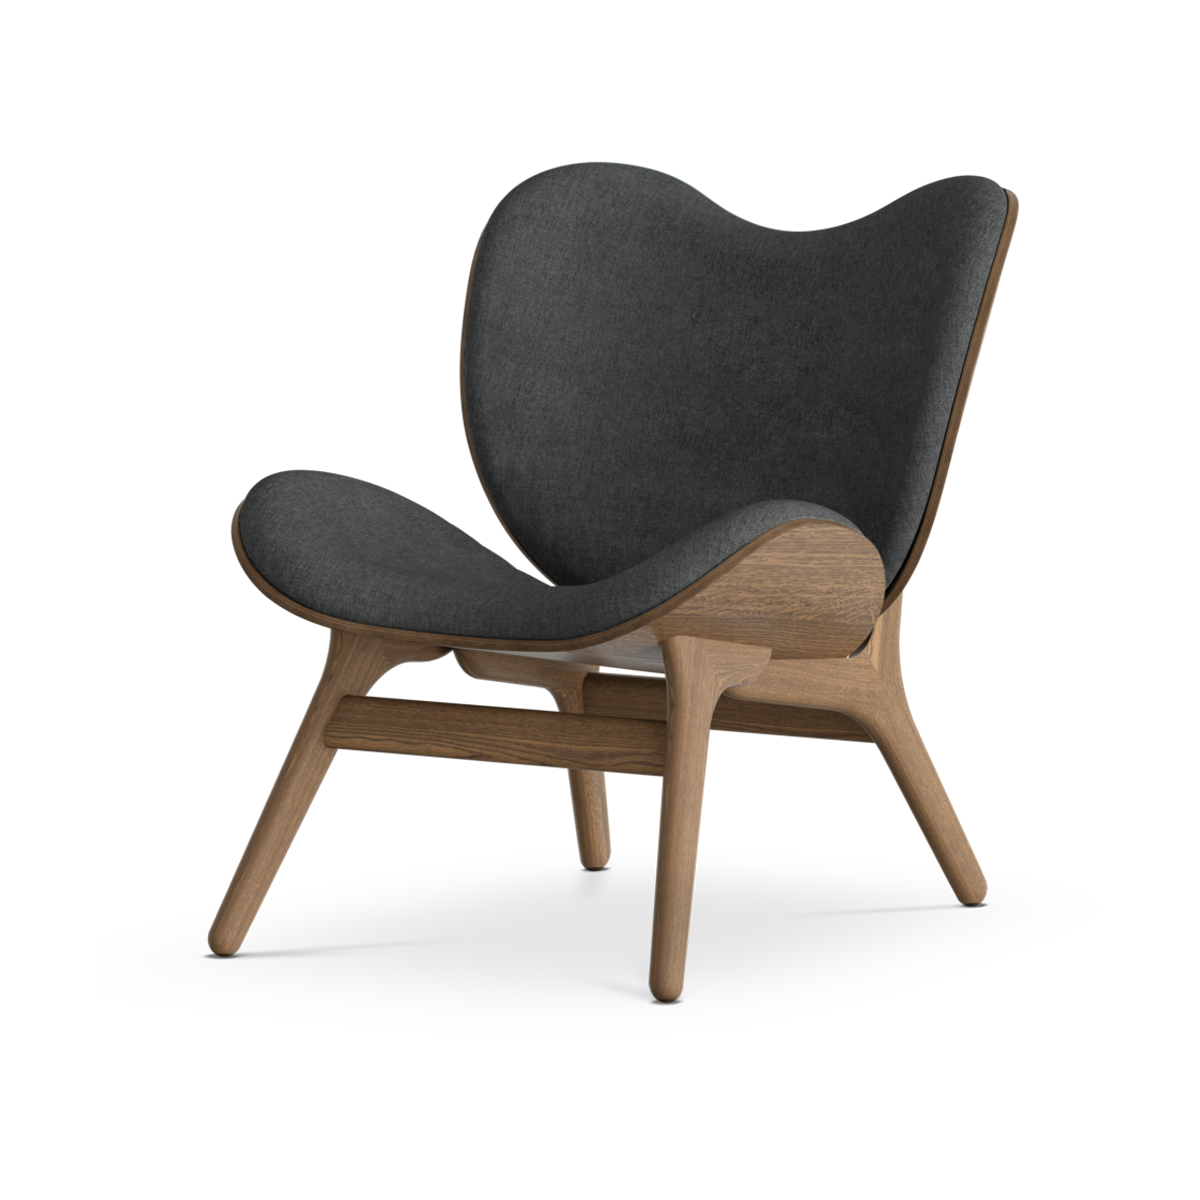 A Conversation Piece houten fauteuil donker eiken - Shadow